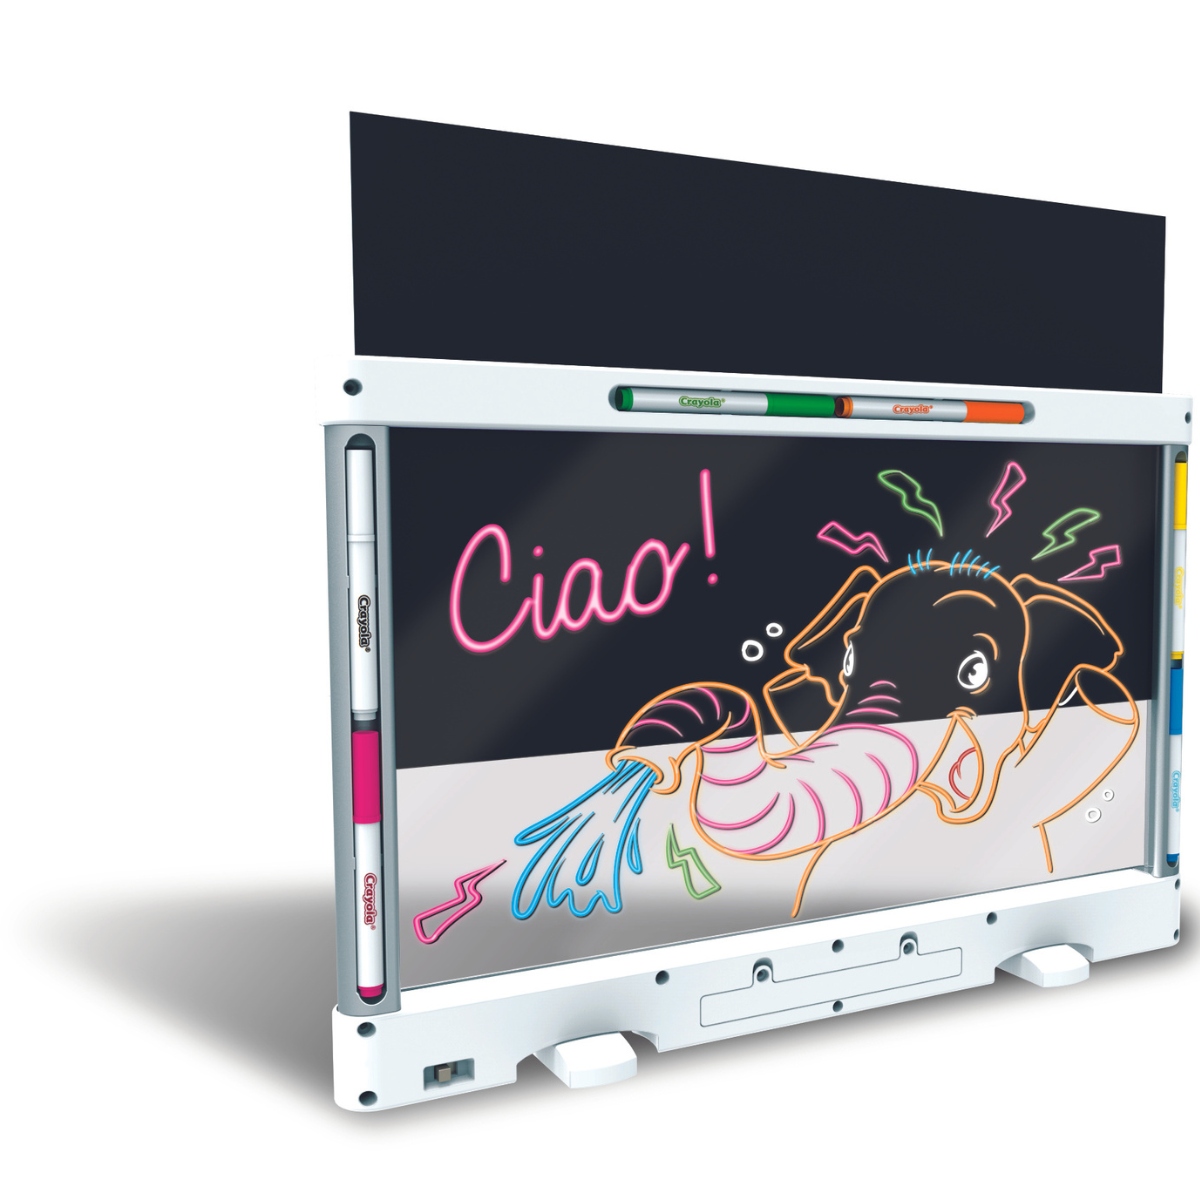 Crayola lavagna luminosa deluxe maxi superficie, super lavagna cancellabile per colorare, età consigliata: 6-10 anni - CRAYOLA